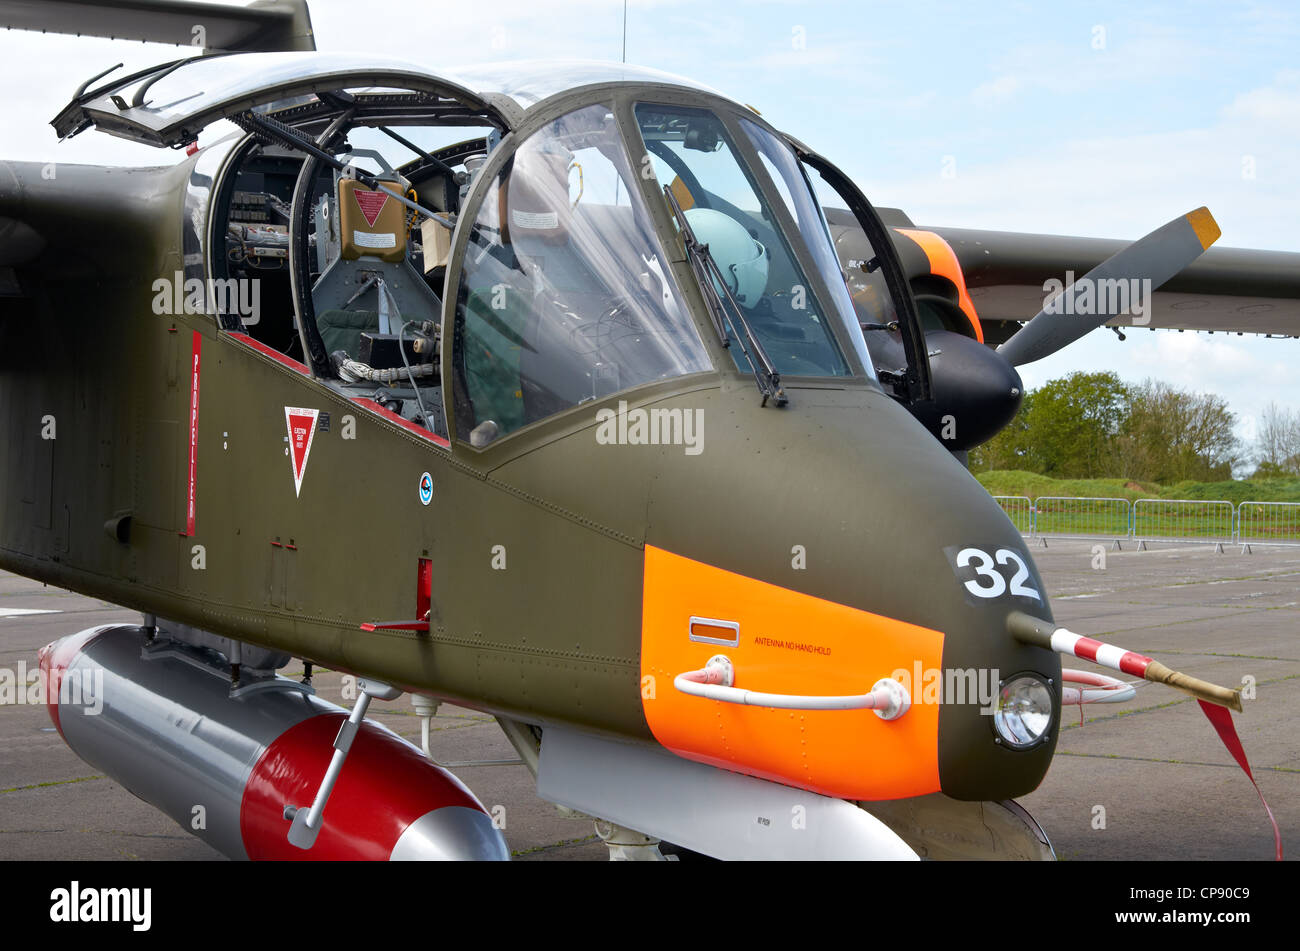 North American Aviation Rockwell OV-10 Bronco de turboprop avion d'observation et d'attaque légère à Abingdon Airshow 2012 Banque D'Images